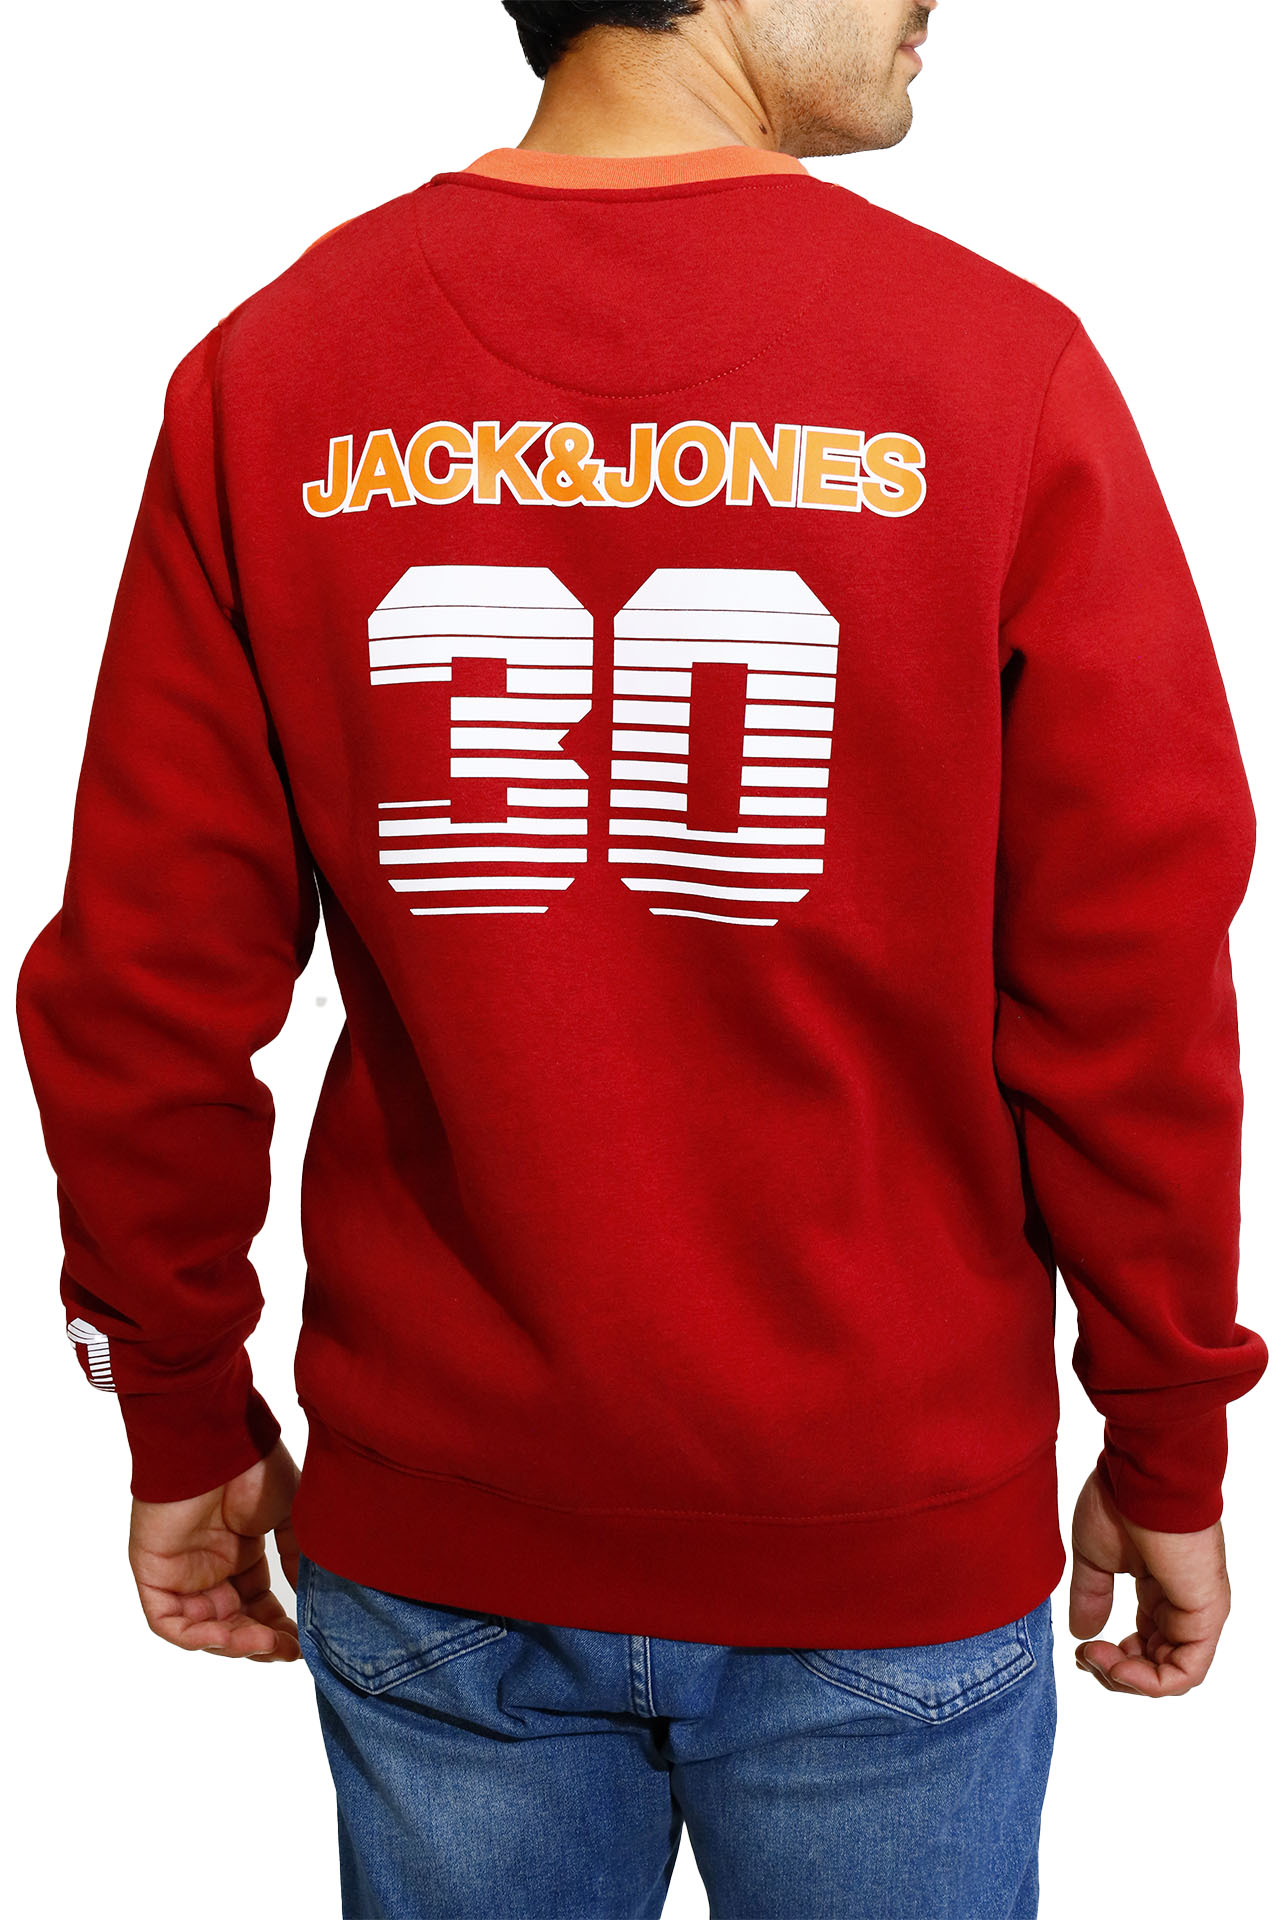 JACK & JONES սվիտեր